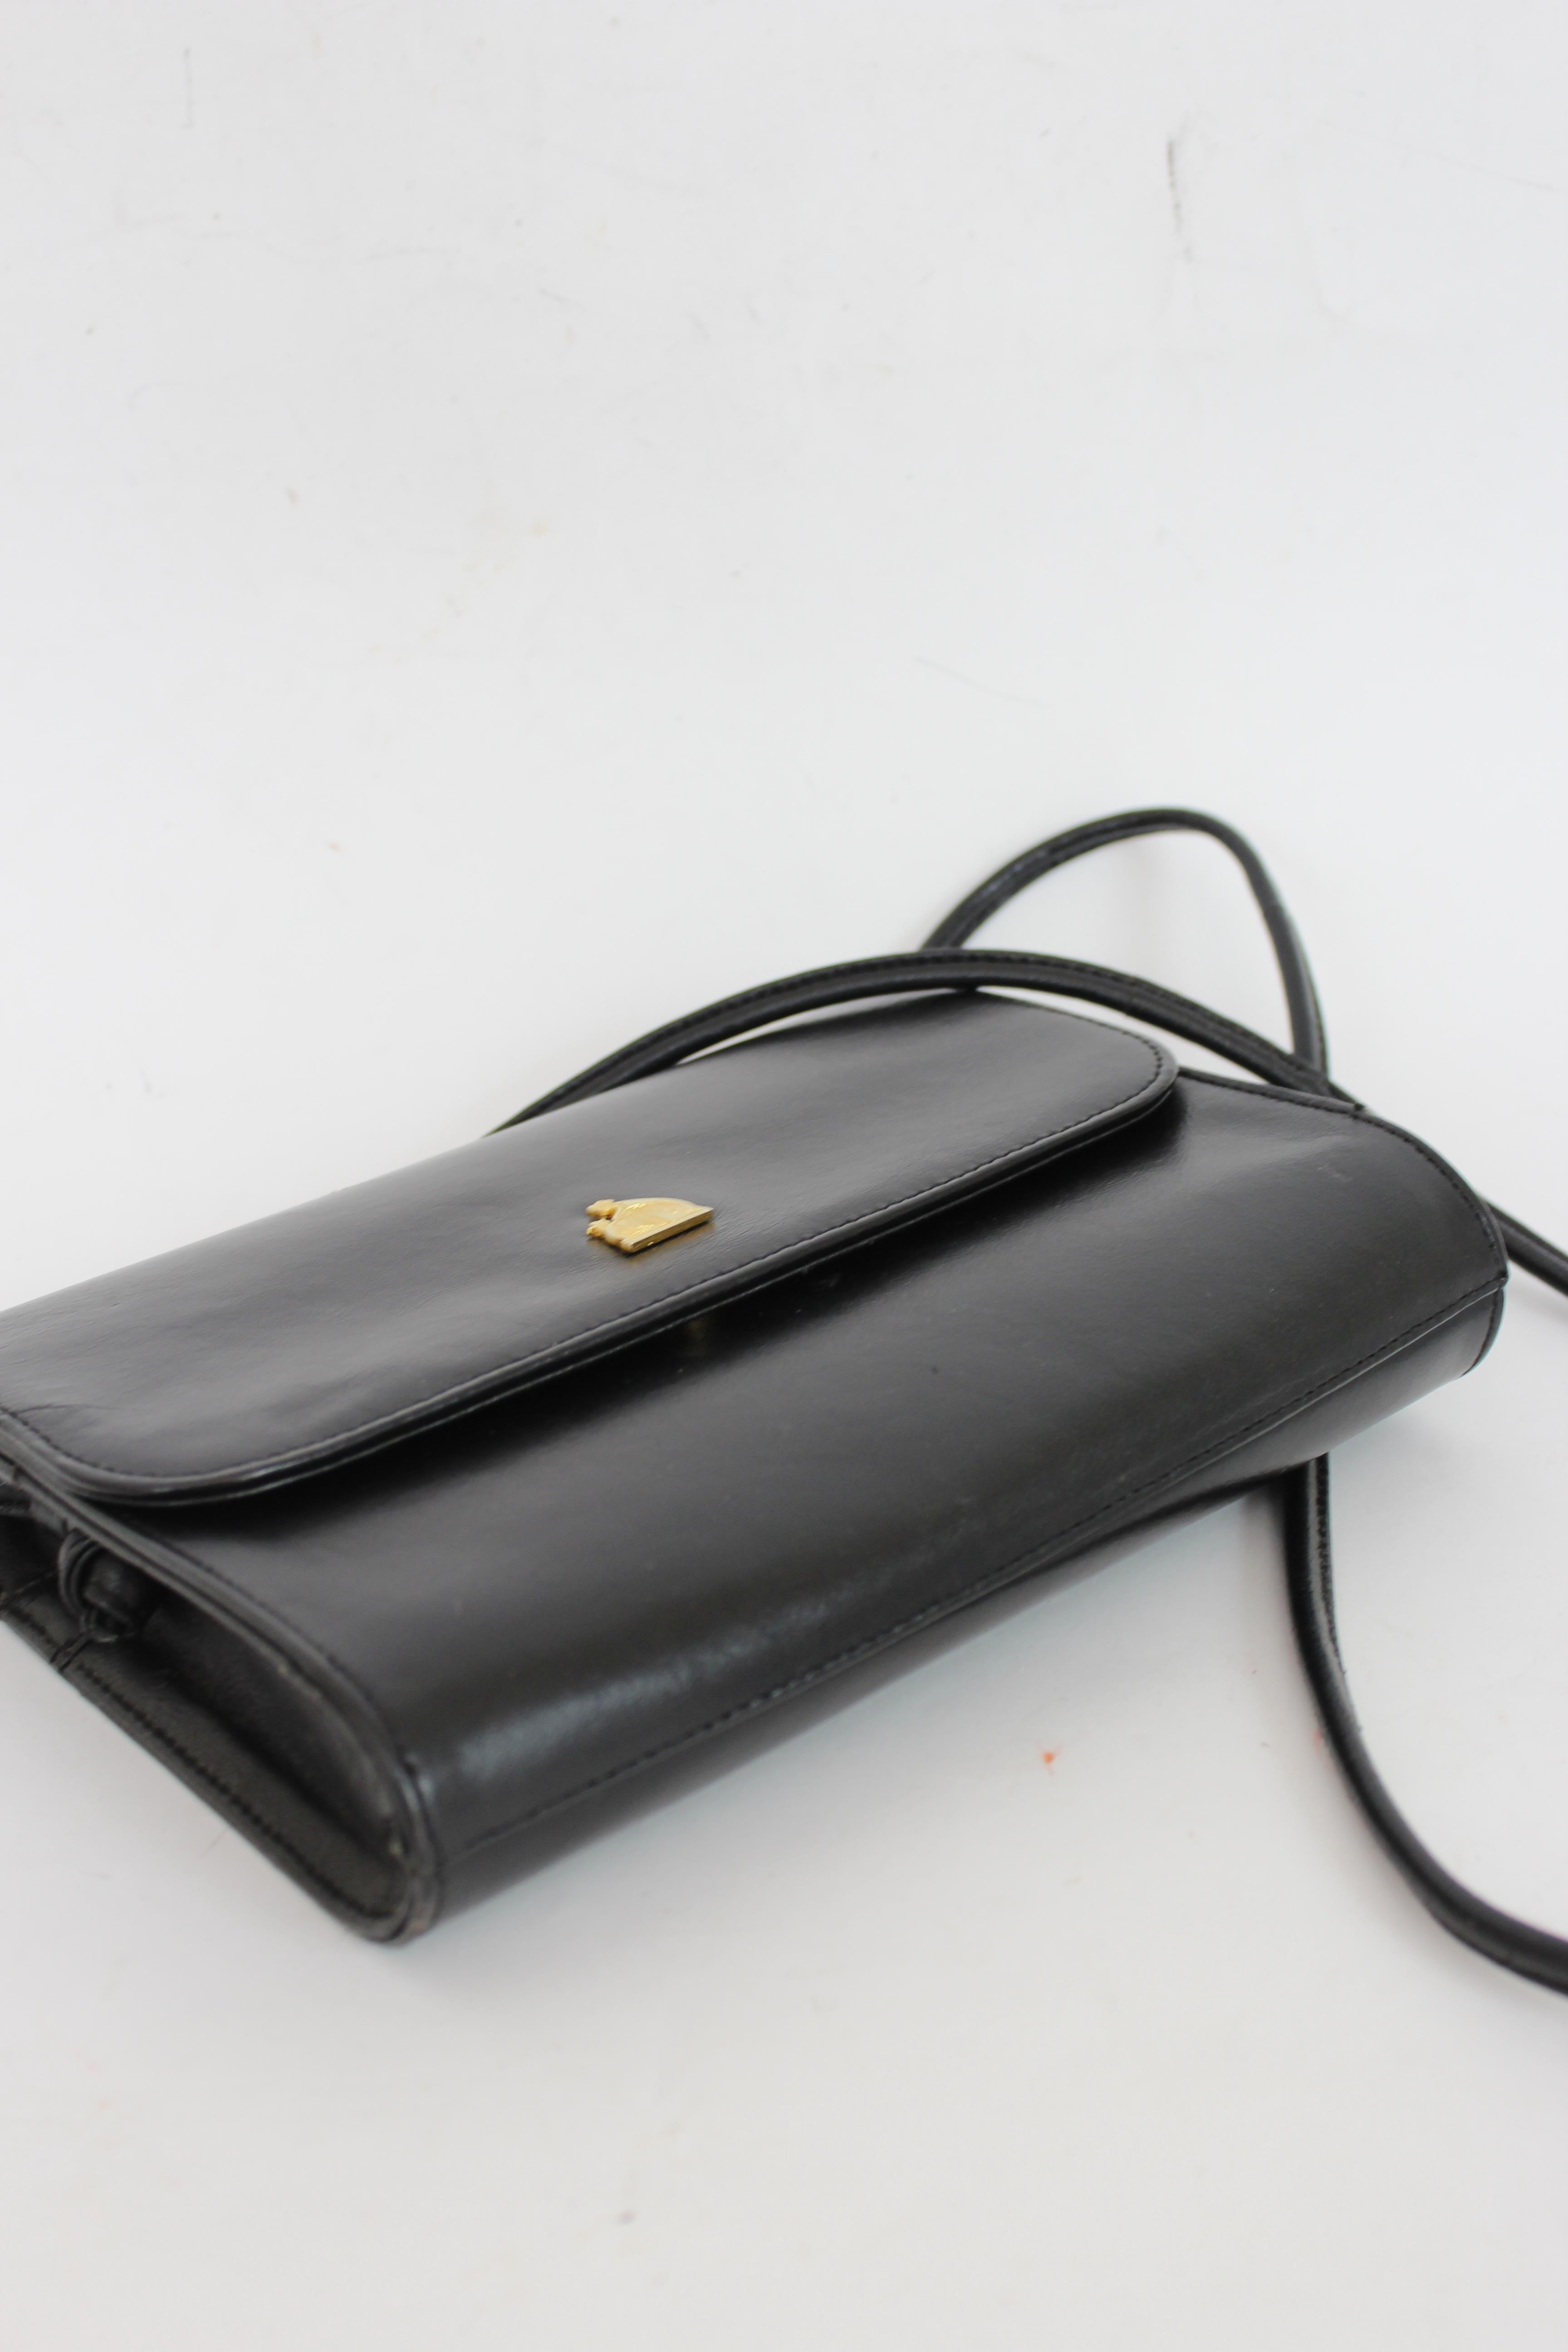 Lanvin Black Leather Vintage Evening Shoulder Bag 1